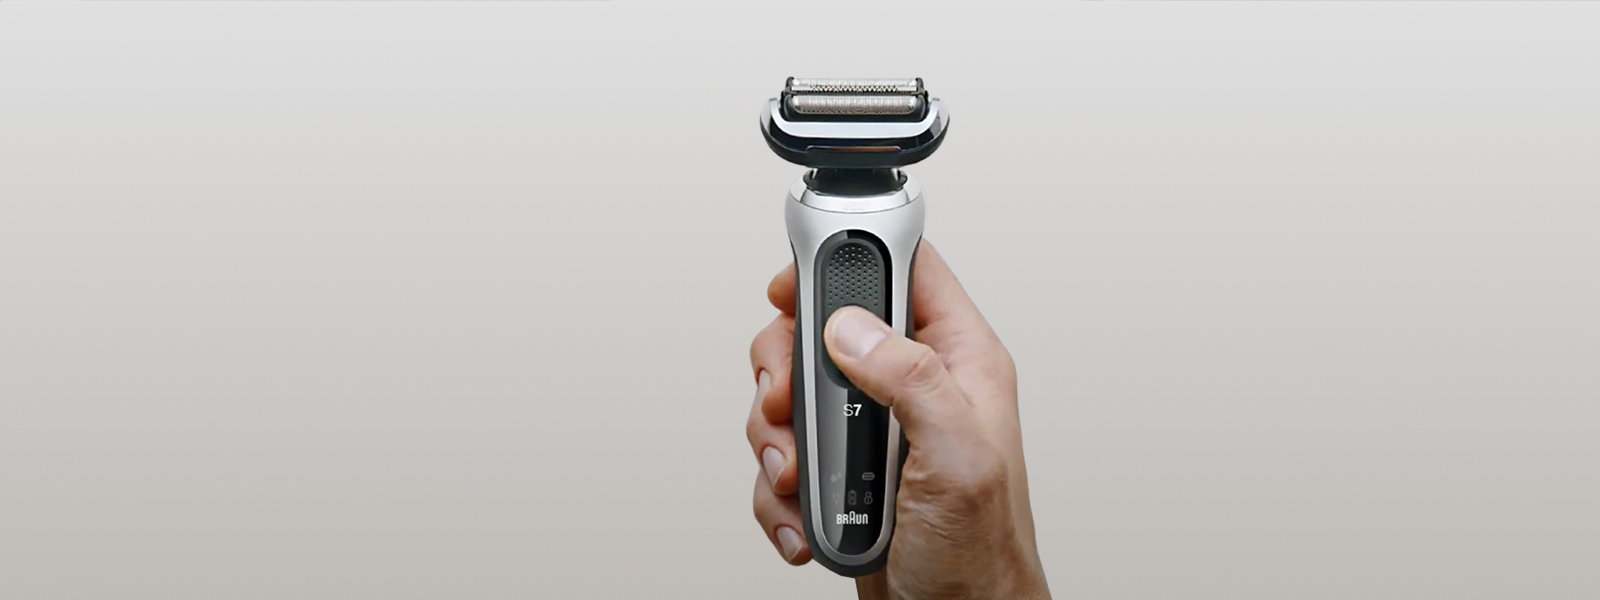 Esta afeitadora eléctrica de hombre de Braun tiene un descuentazo del 26%  por tiempo limitado